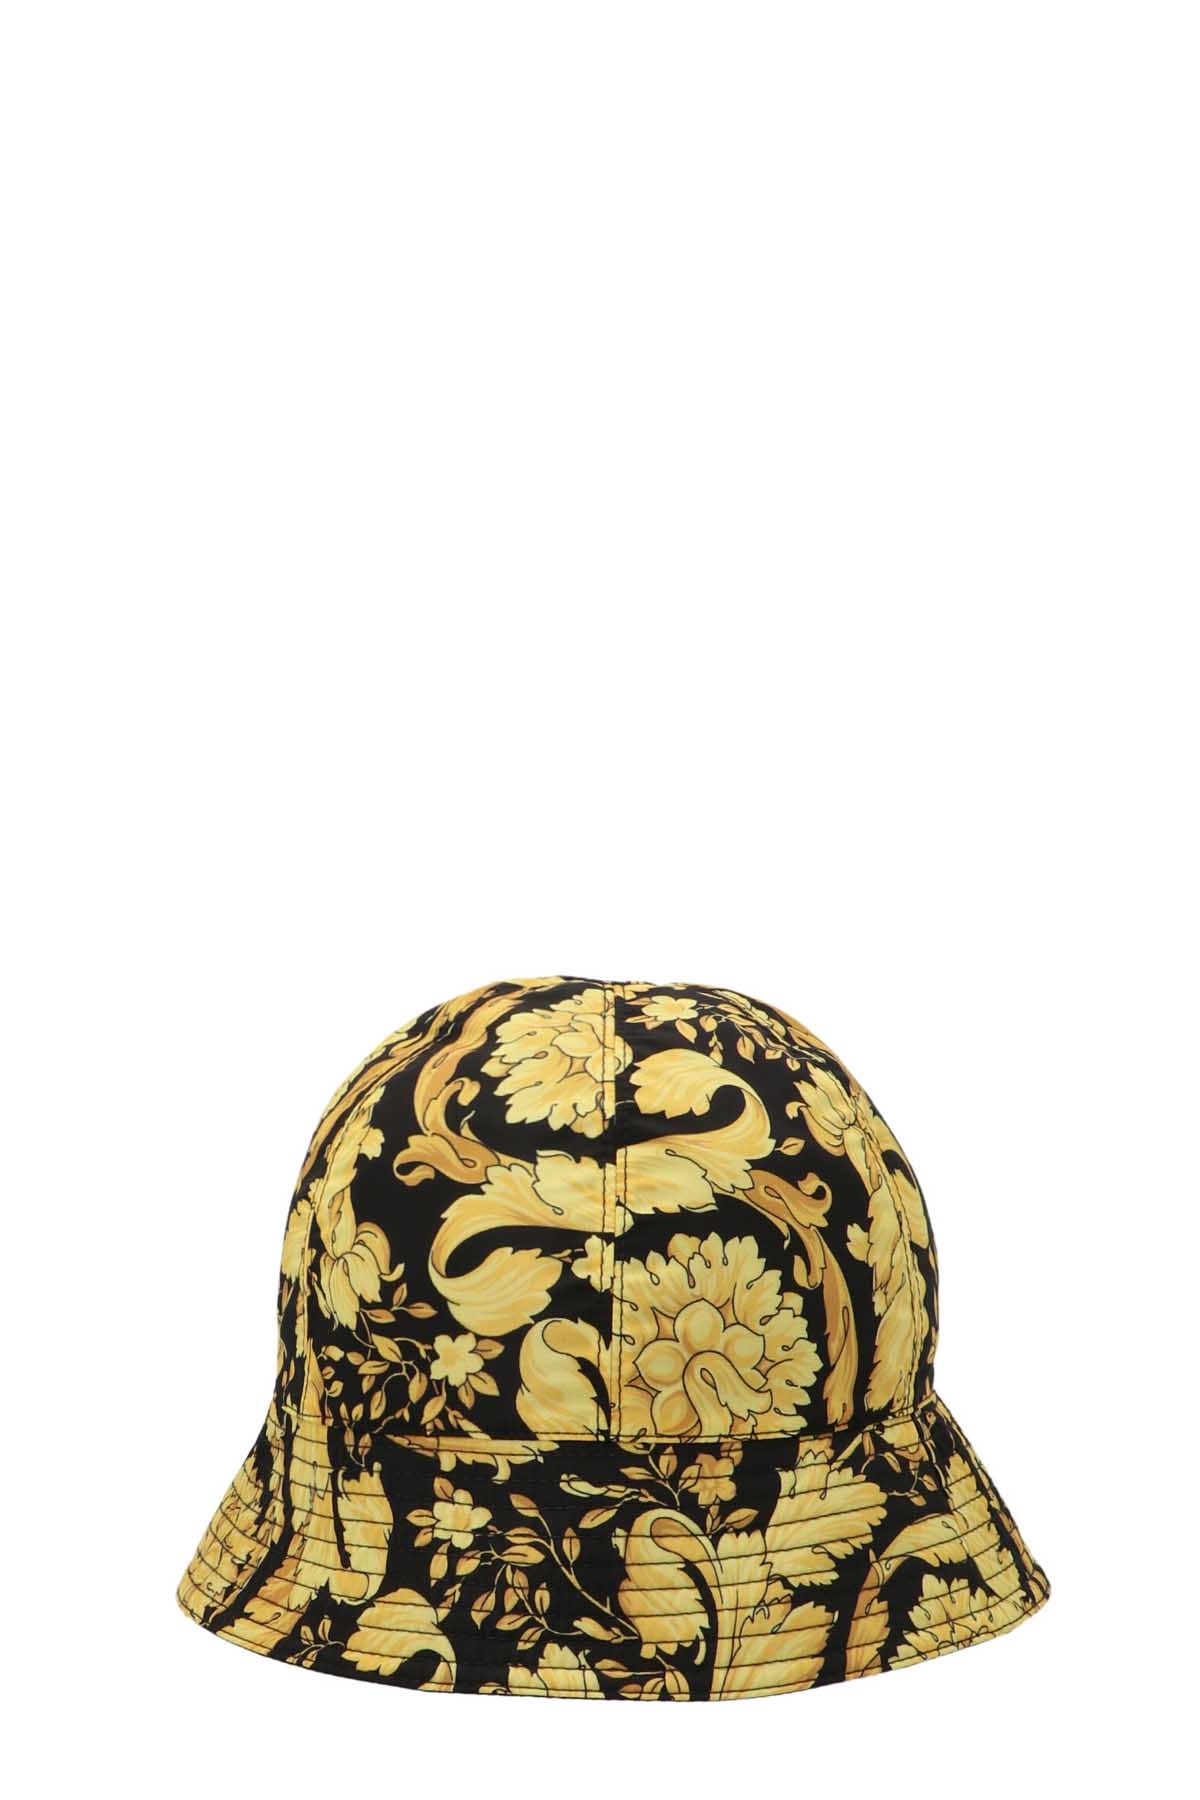 VERSACE 'Barocco 92' Bucket Hat